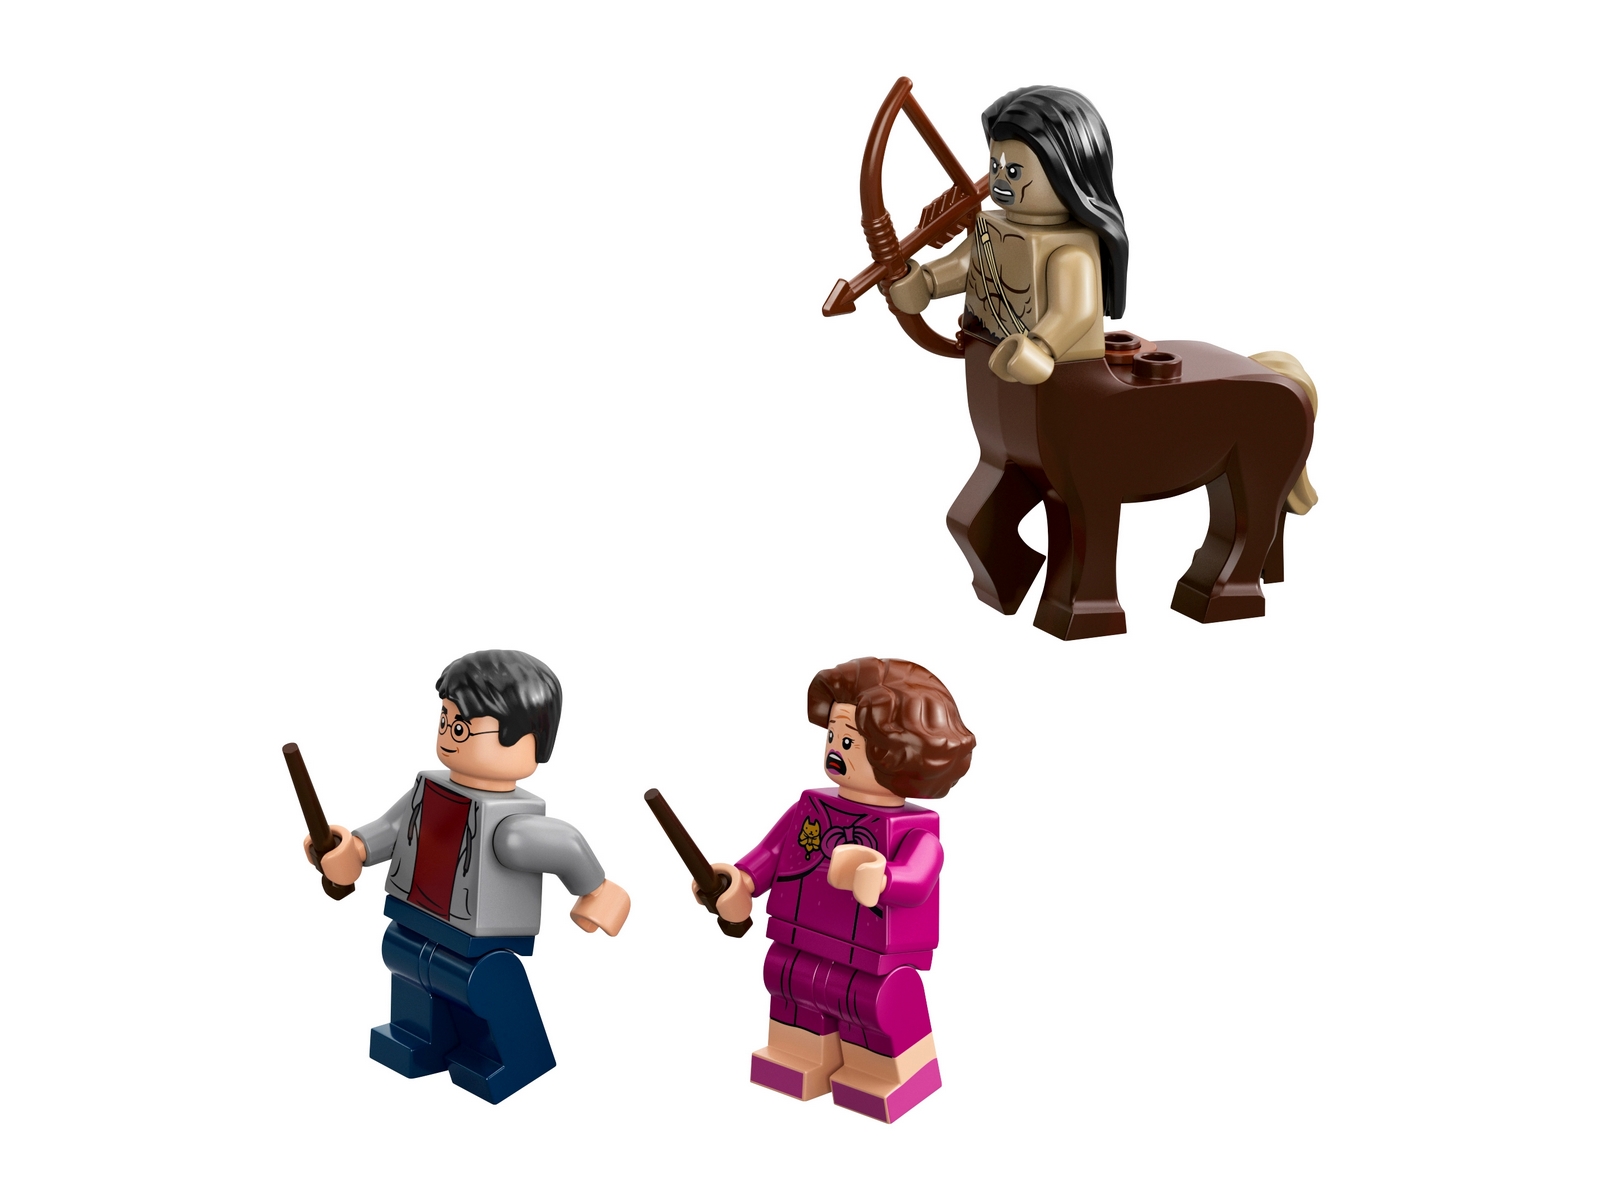 Конструктор LEGO Harry Potter «Запретный лес: Грохх и Долорес Амбридж» 75967 / 253 детали